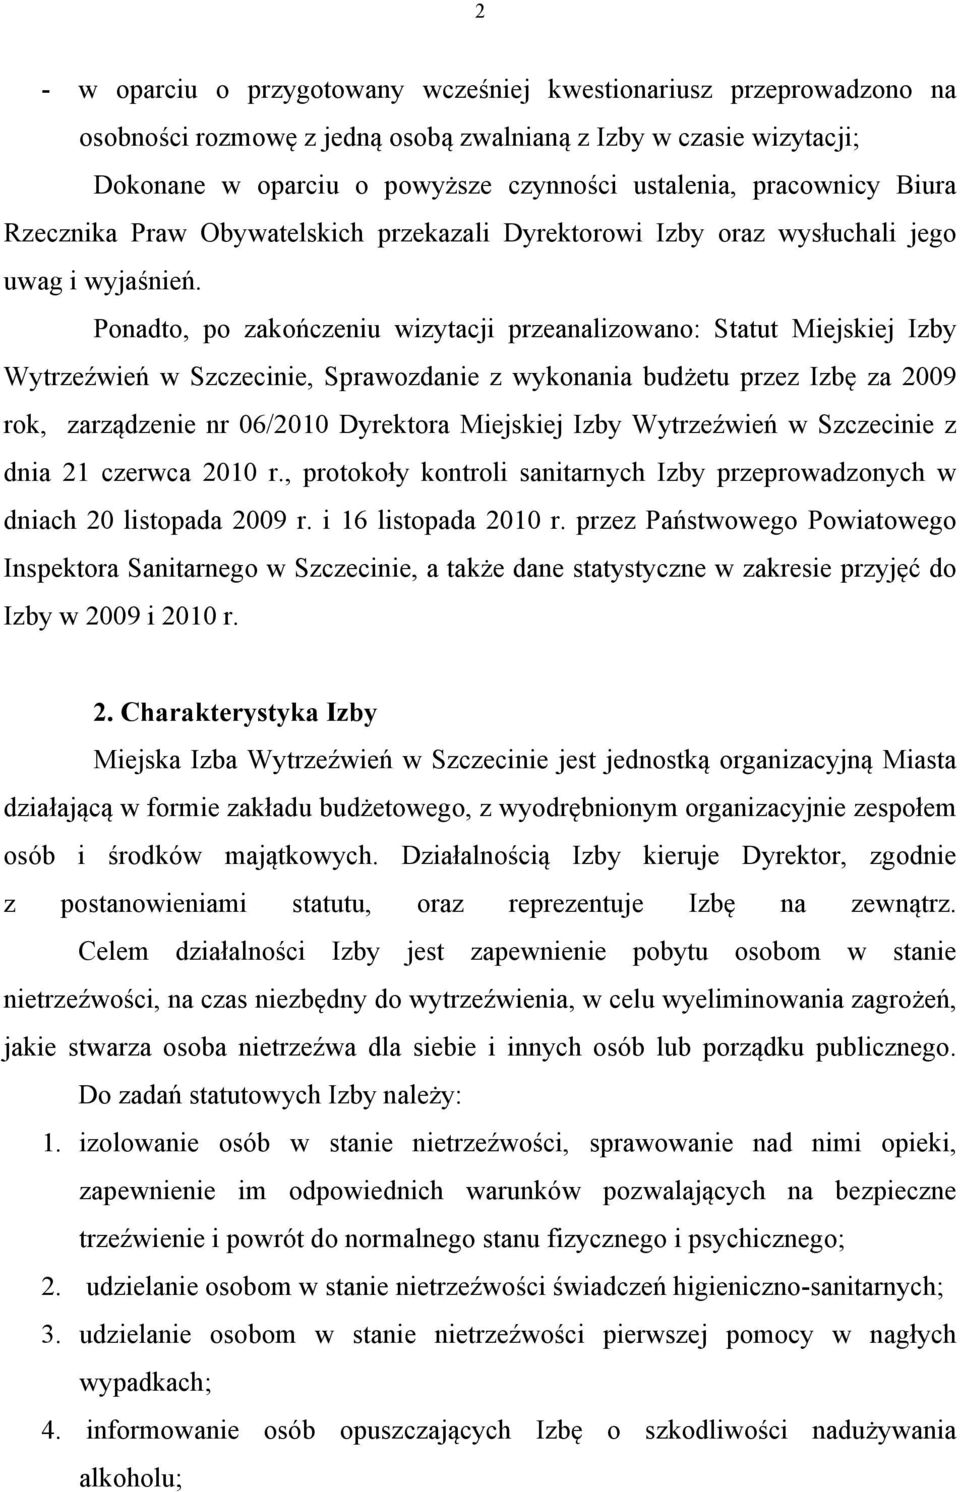 Ponadto, po zakończeniu wizytacji przeanalizowano: Statut Miejskiej Izby Wytrzeźwień w Szczecinie, Sprawozdanie z wykonania budżetu przez Izbę za 2009 rok, zarządzenie nr 06/2010 Dyrektora Miejskiej